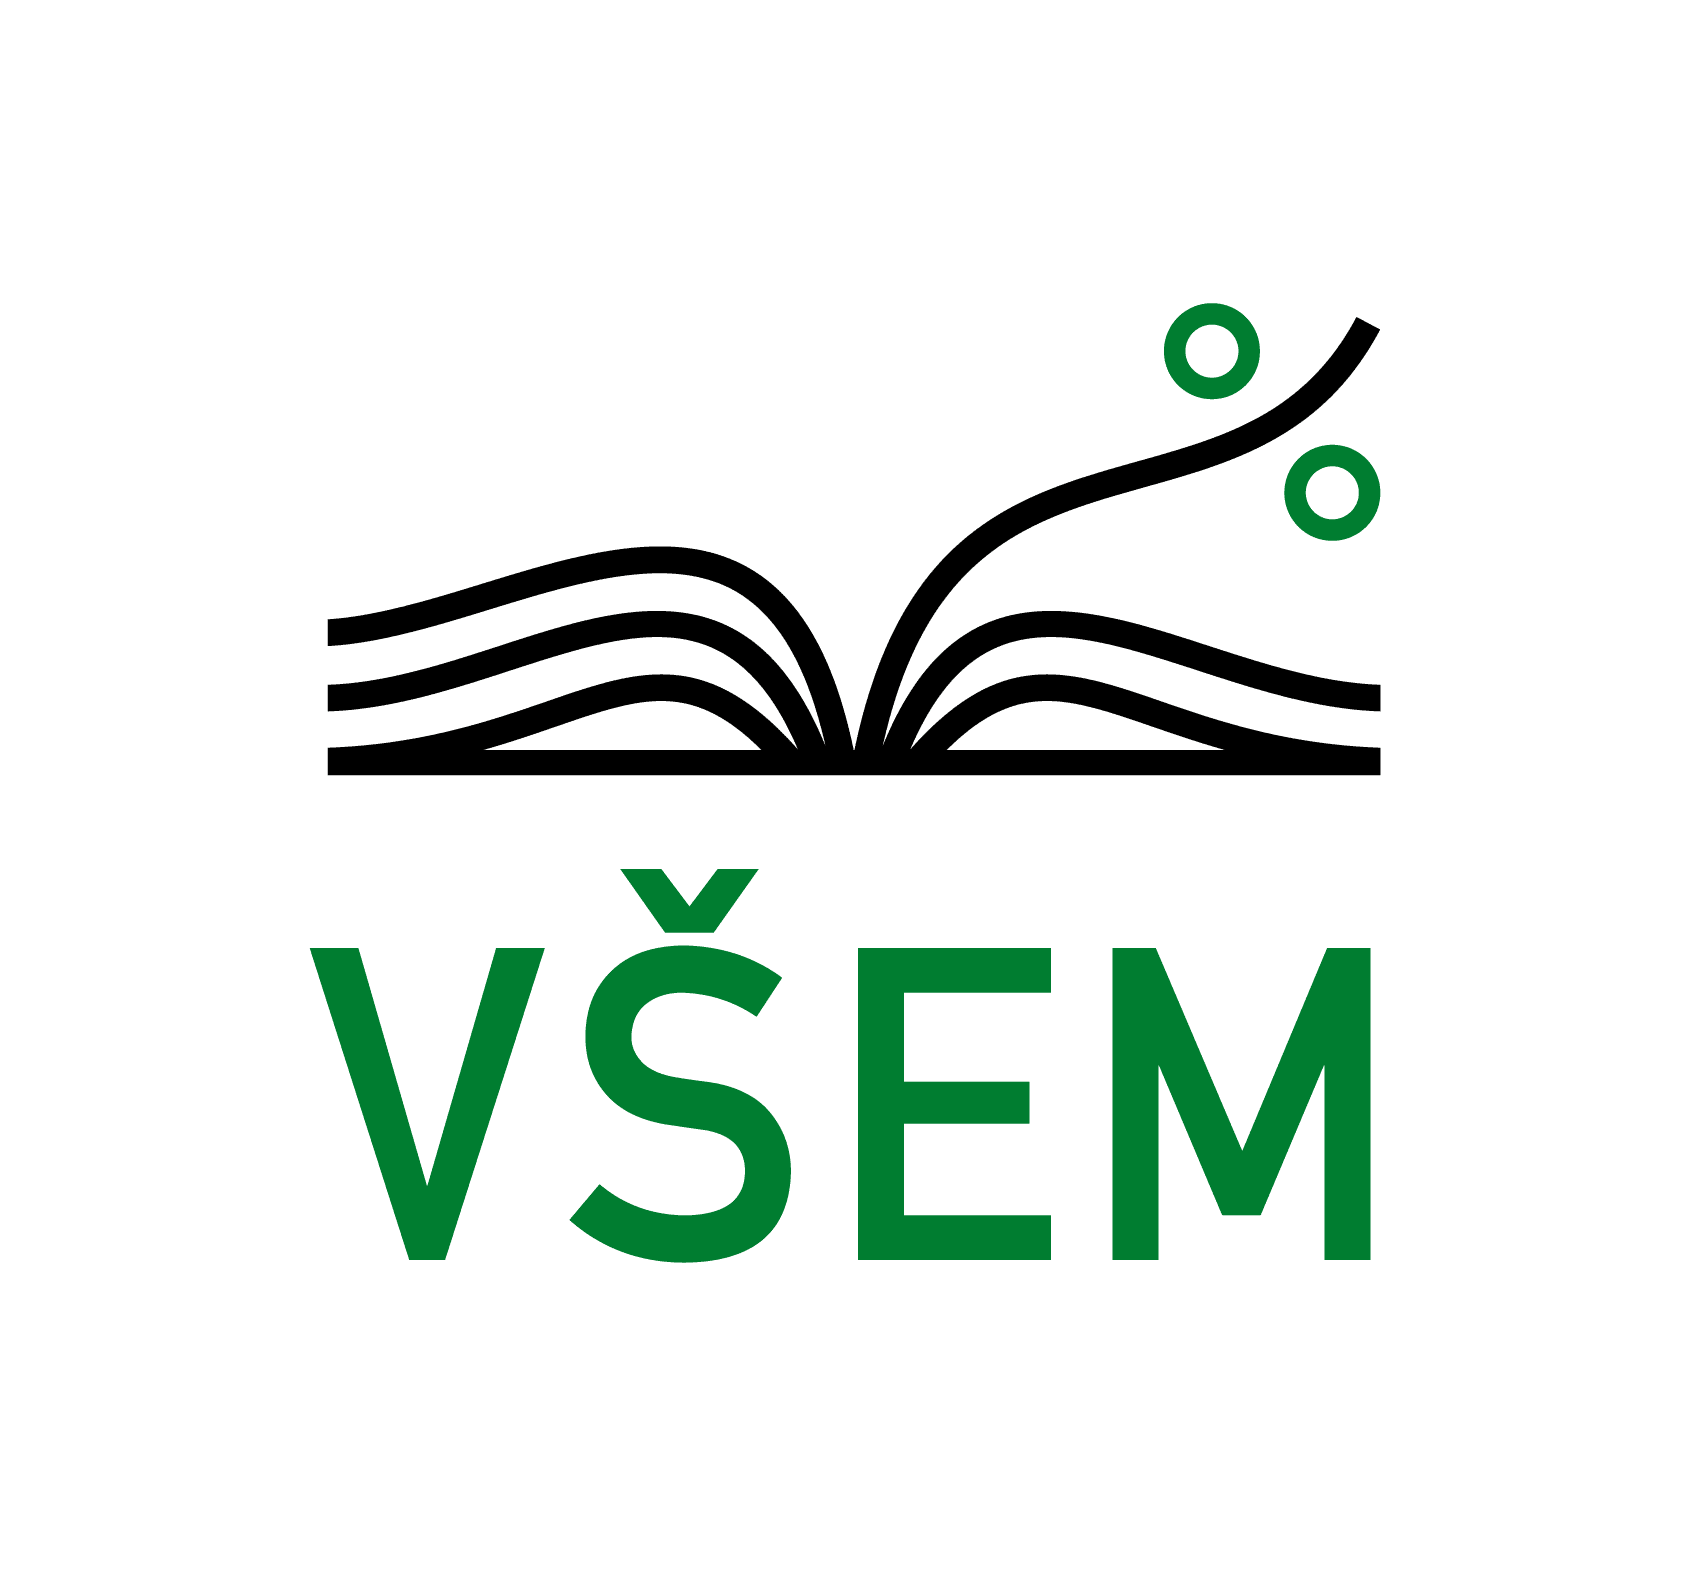 VSEM logo responzivne zakladne-pozitiv